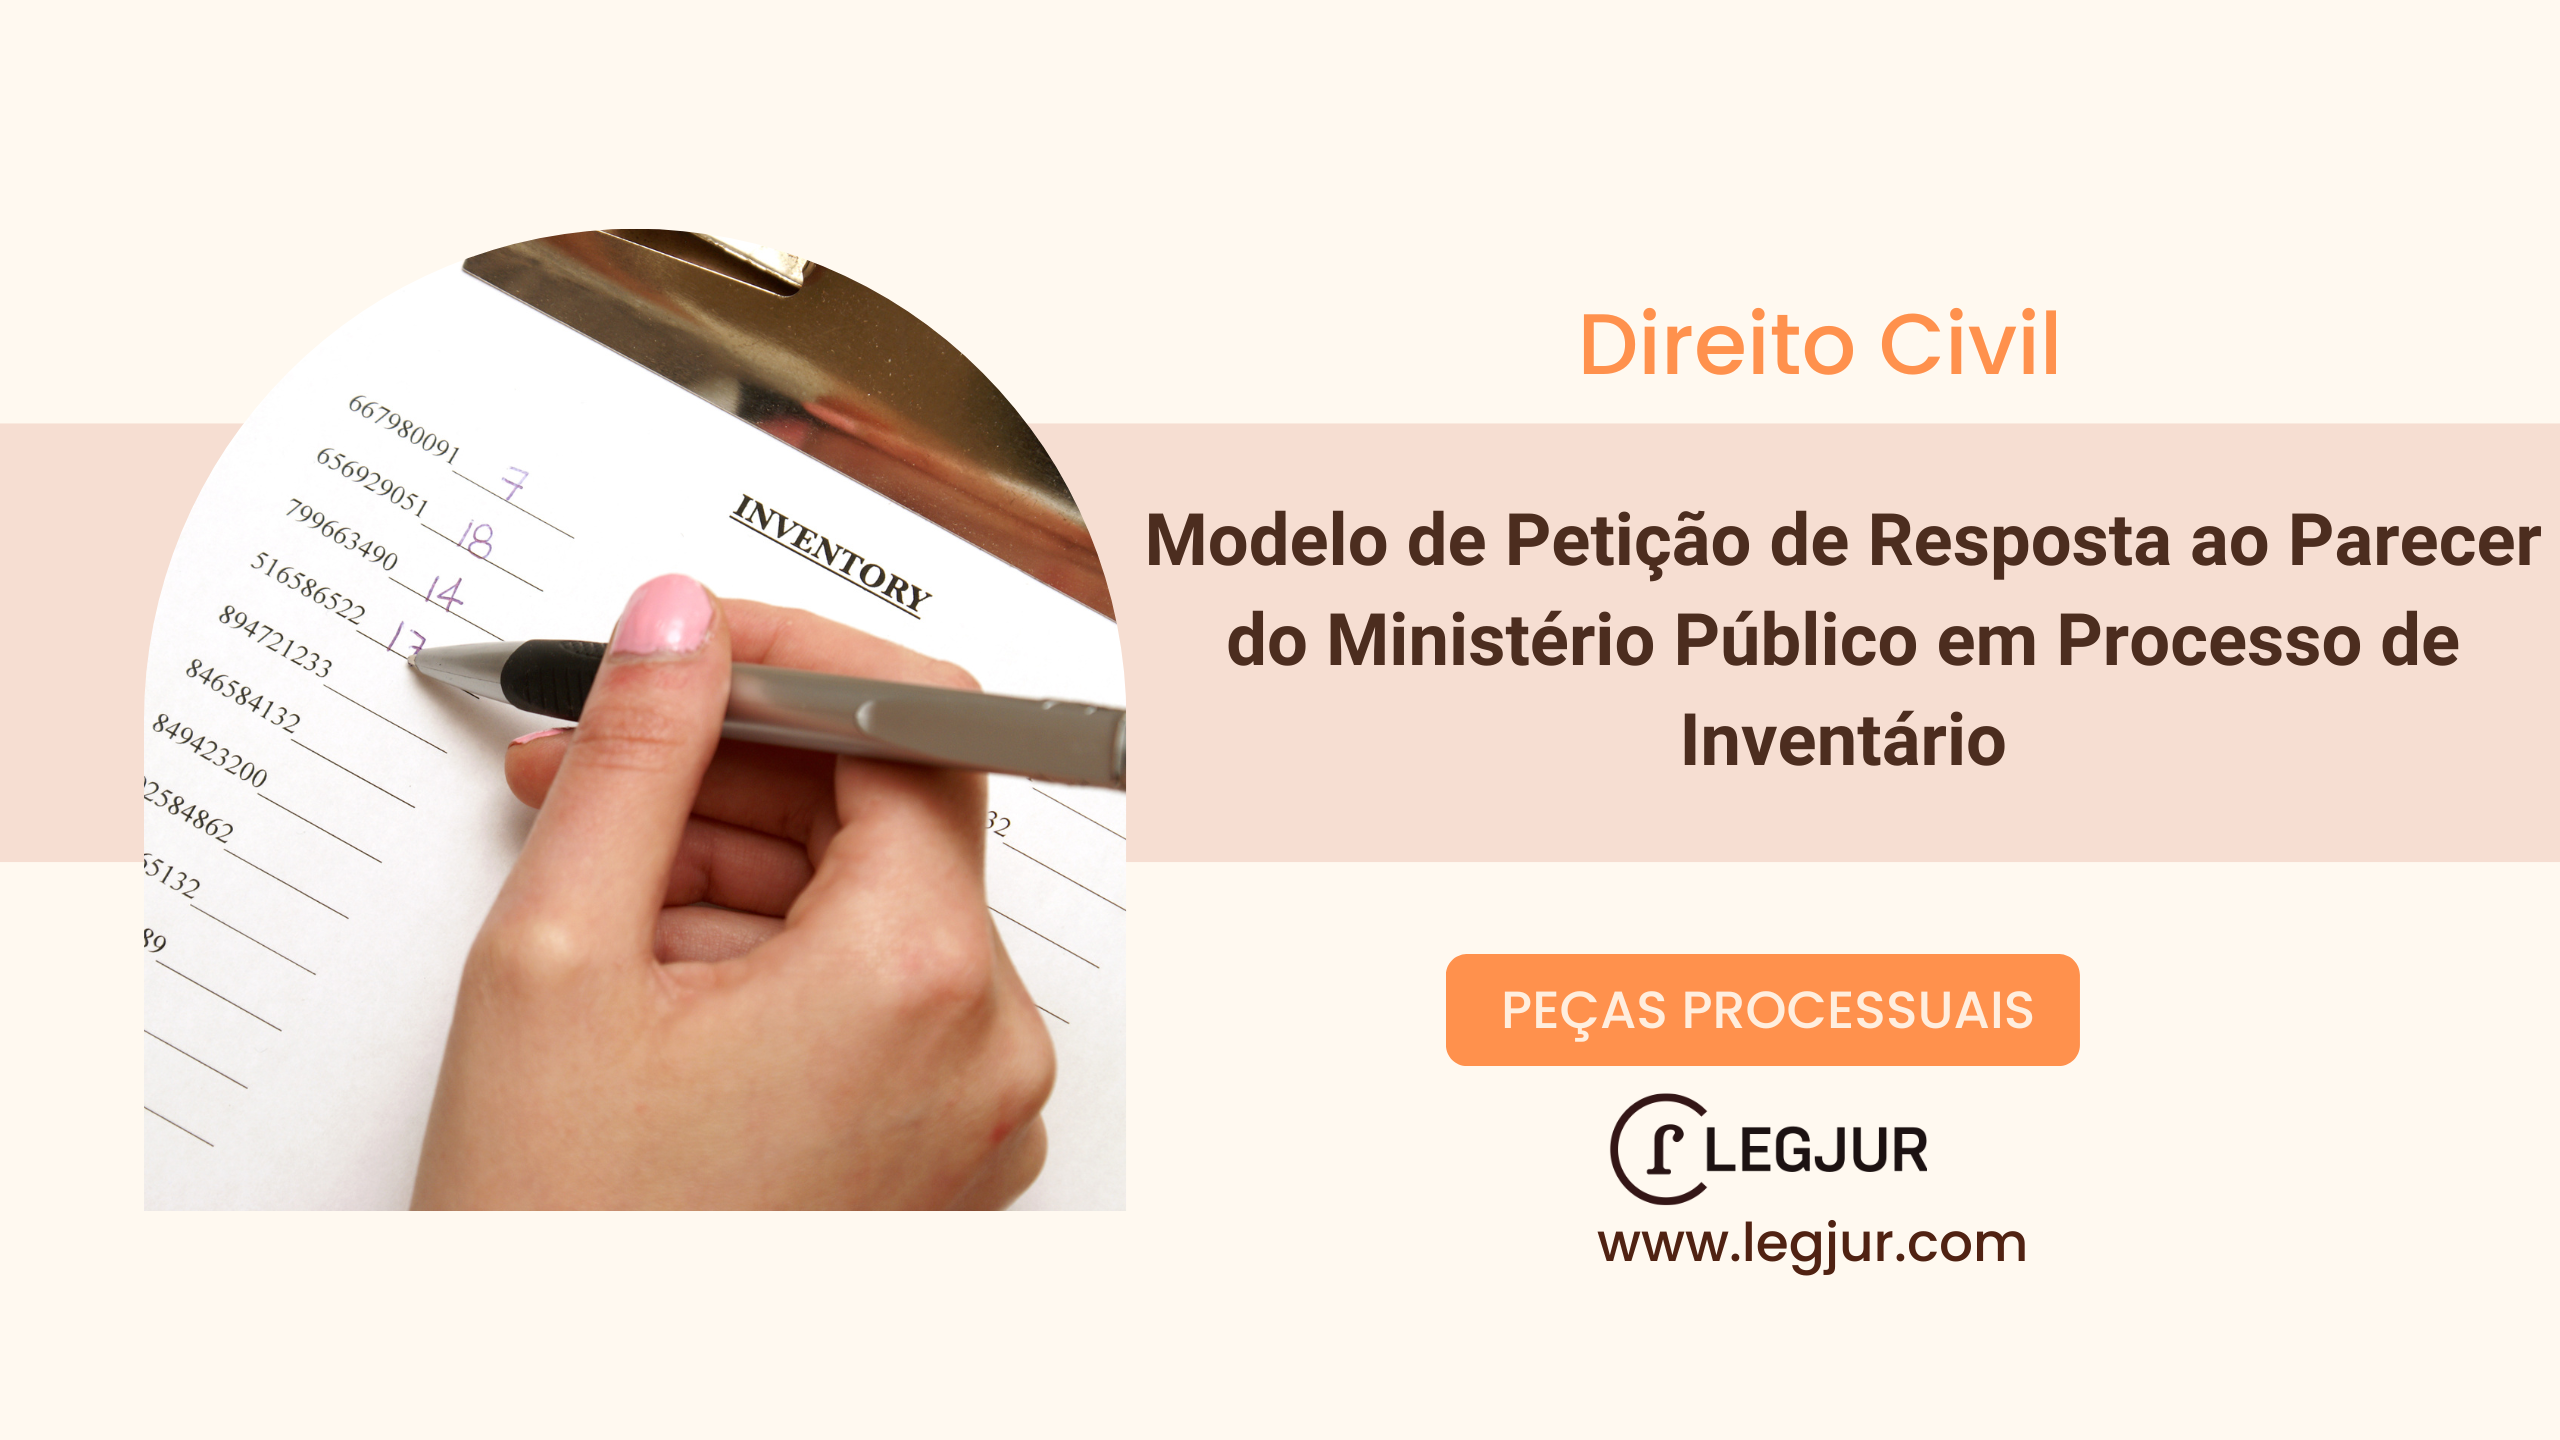 Modelo de Petição de Resposta ao Parecer do Ministério Público em Processo de Inventário